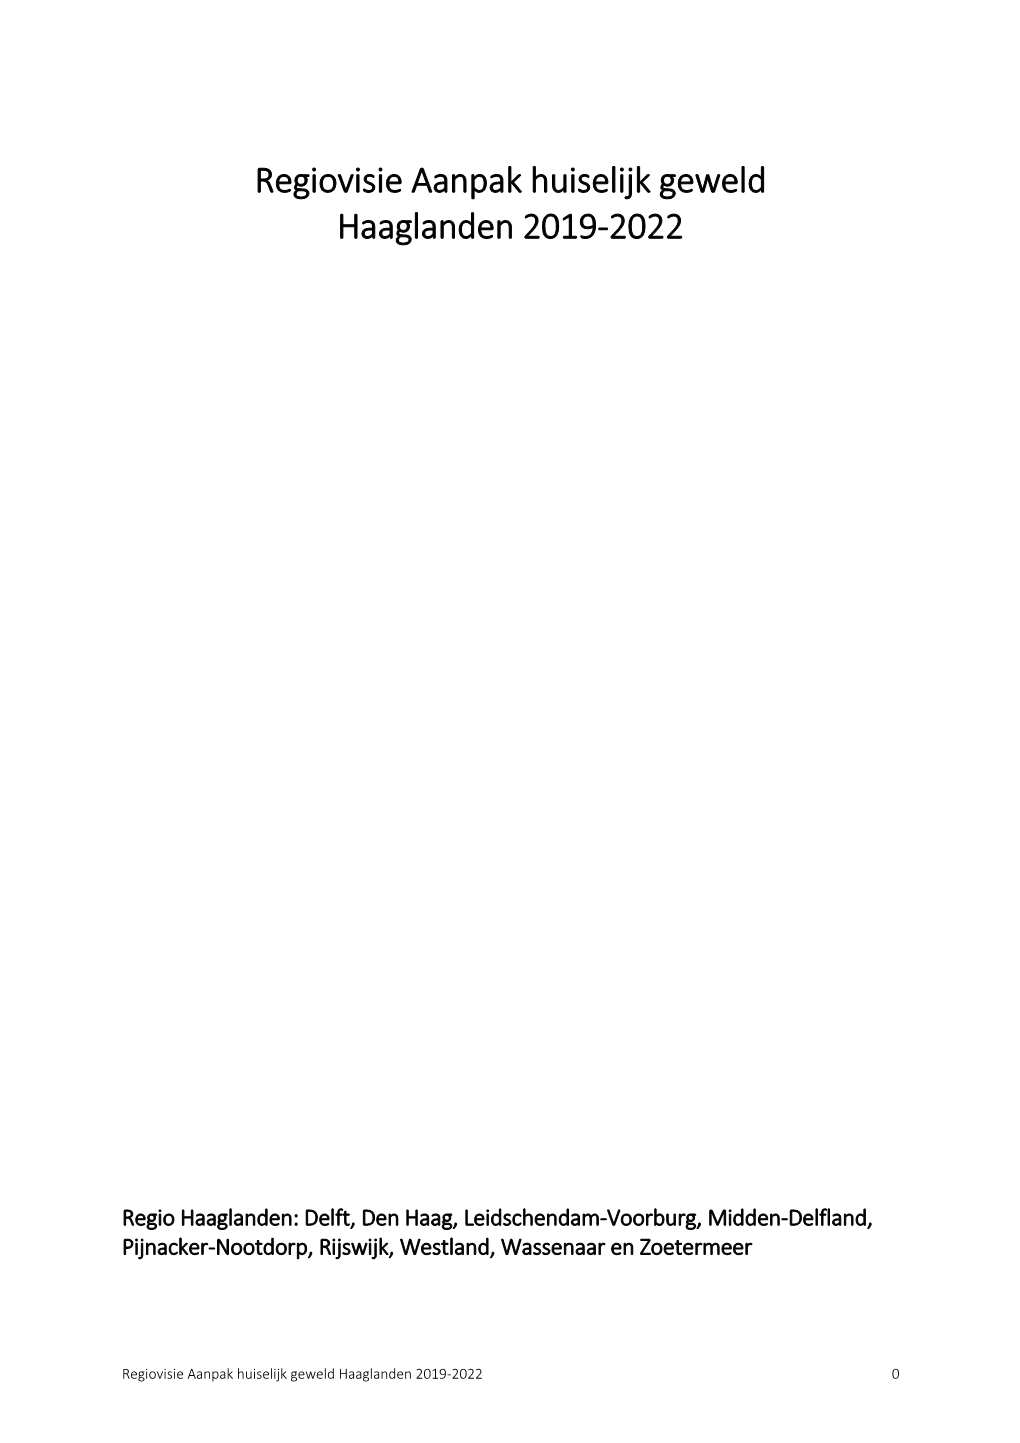 Regiovisie Aanpak Huiselijk Geweld Haaglanden 2019-2022